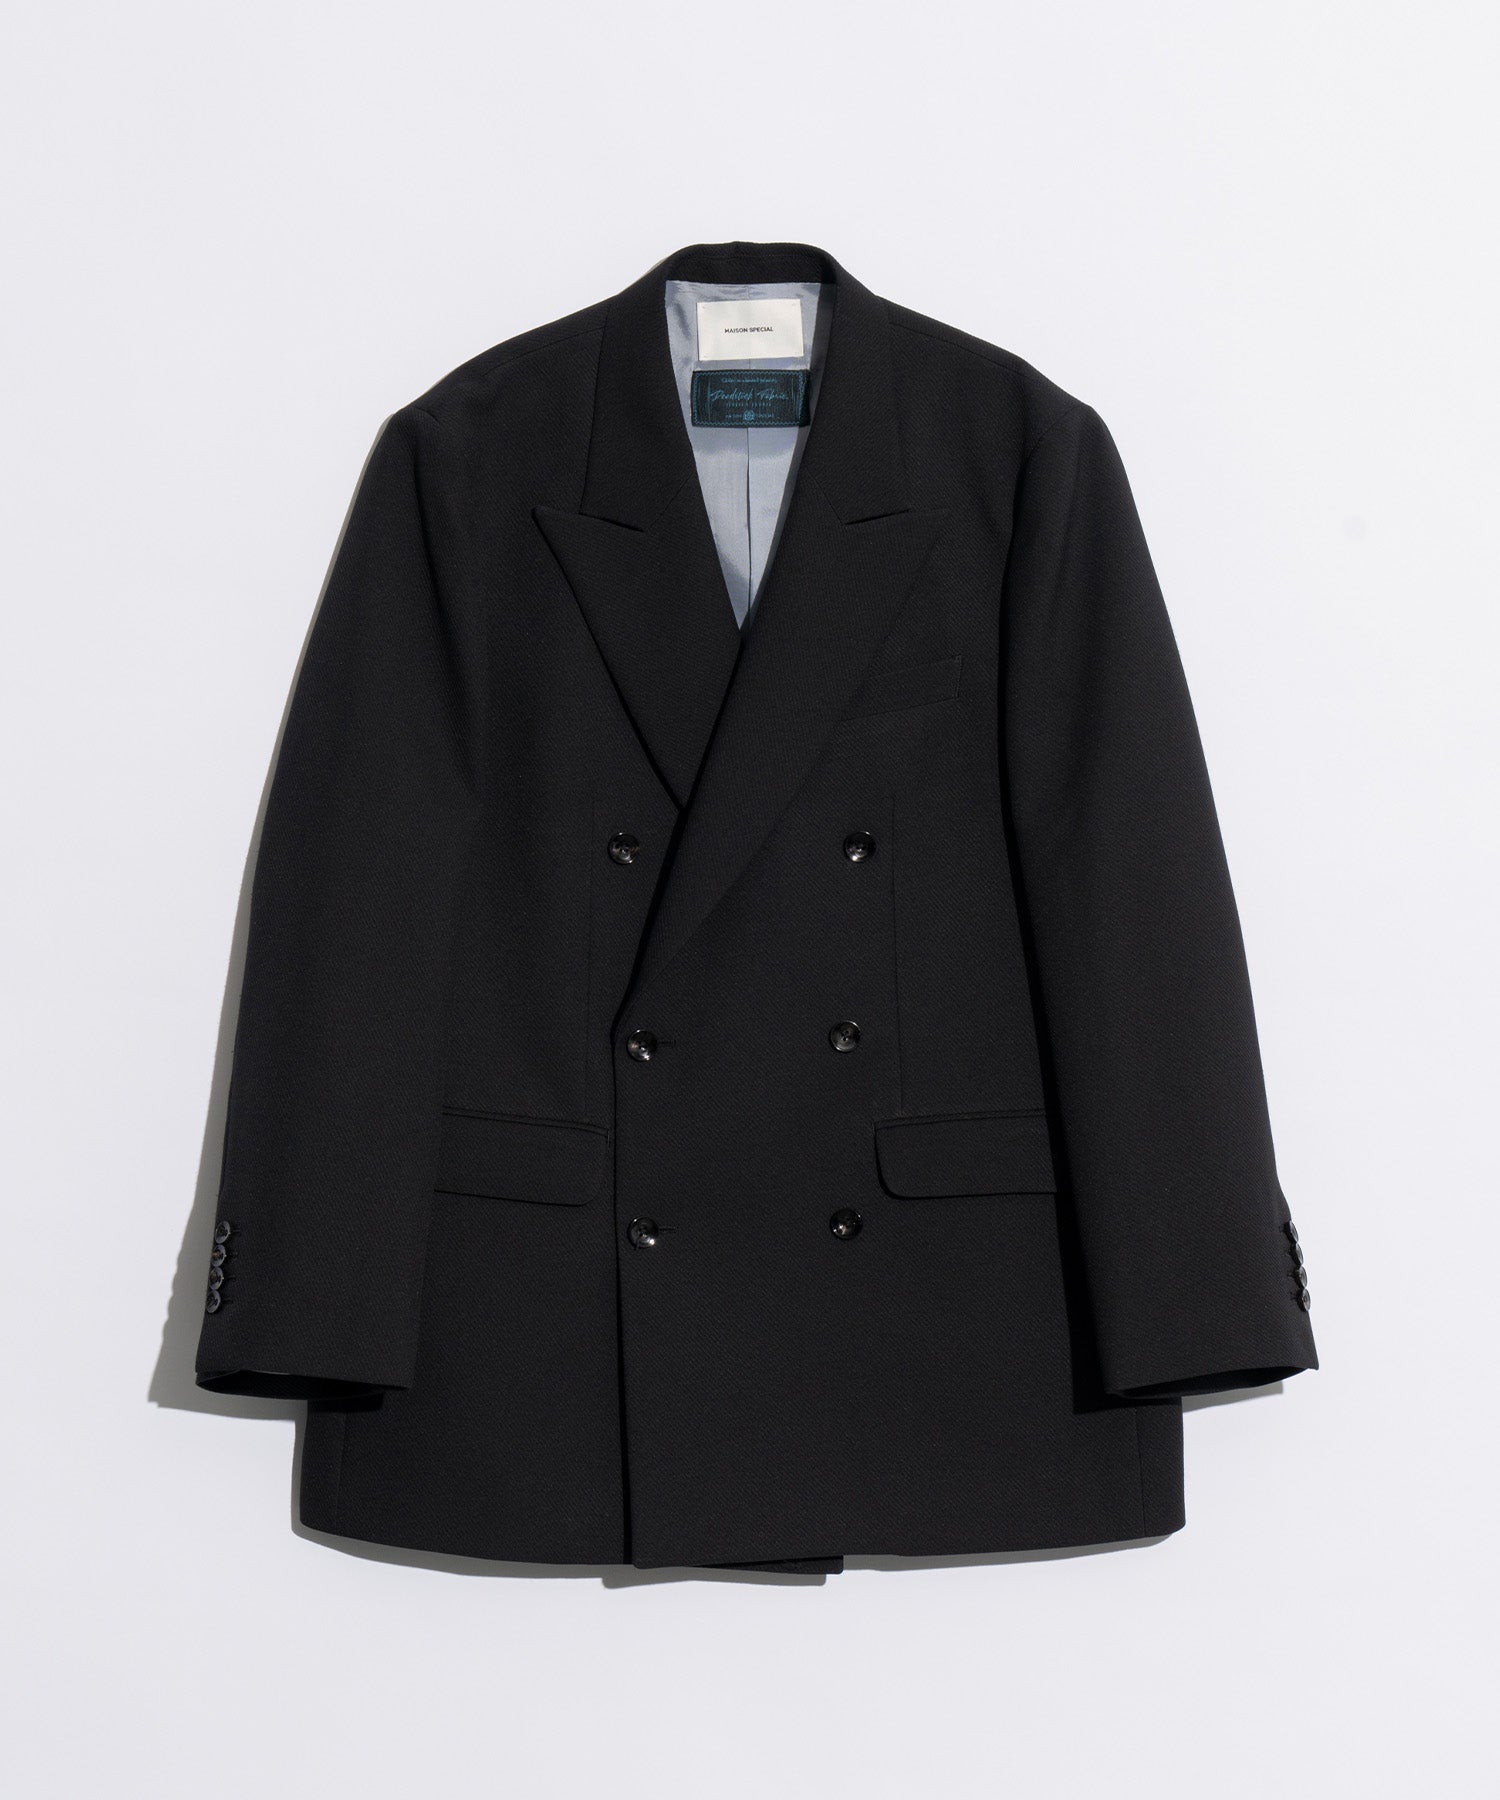 25%OFF【stein】Oversized Tailored Jacket - テーラードジャケット